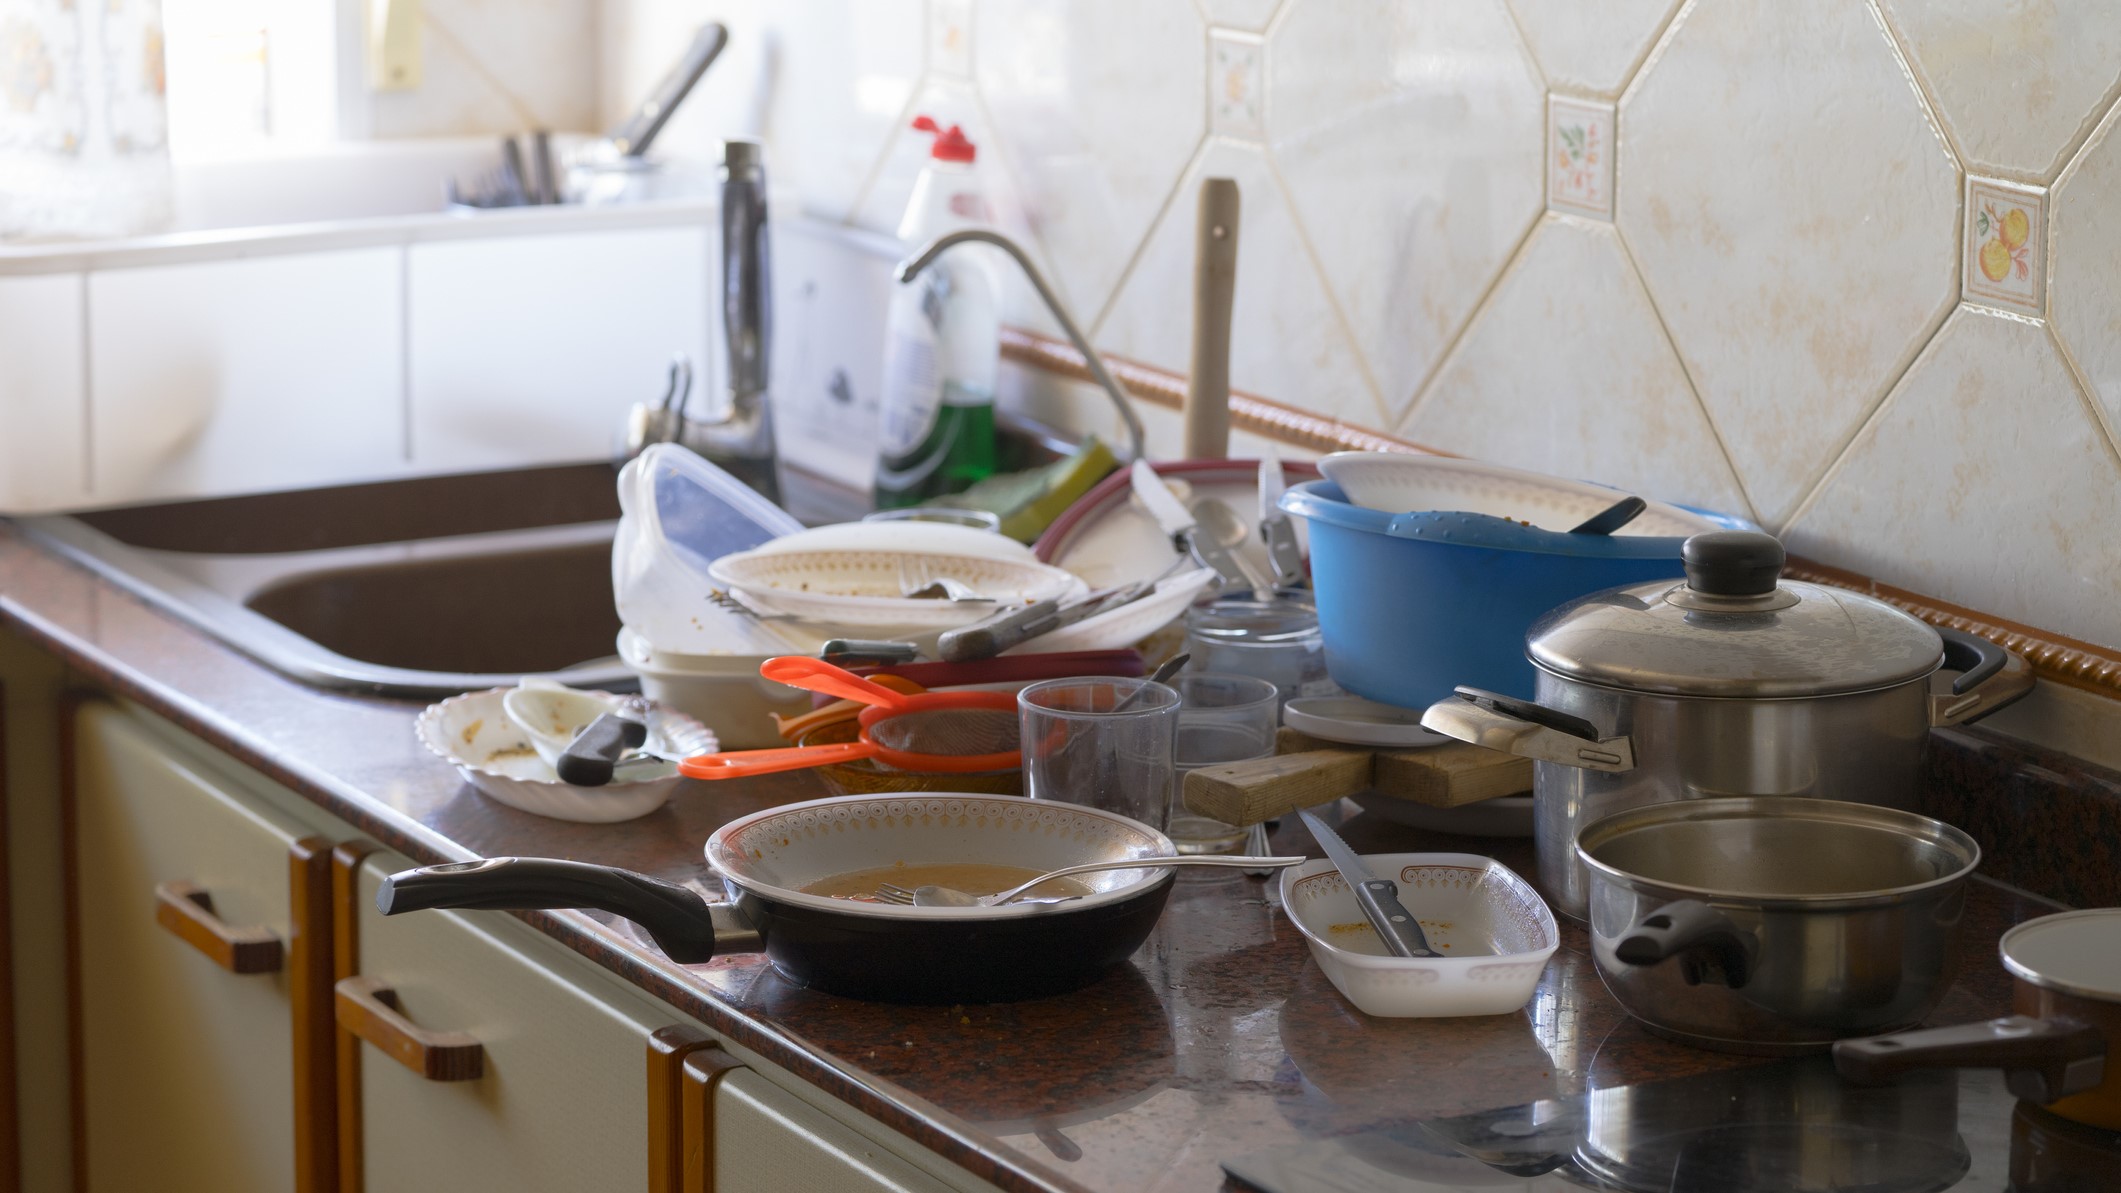 Auf einer Küchenarbeitsplatte stapelte sich schmutziges Geschirr.